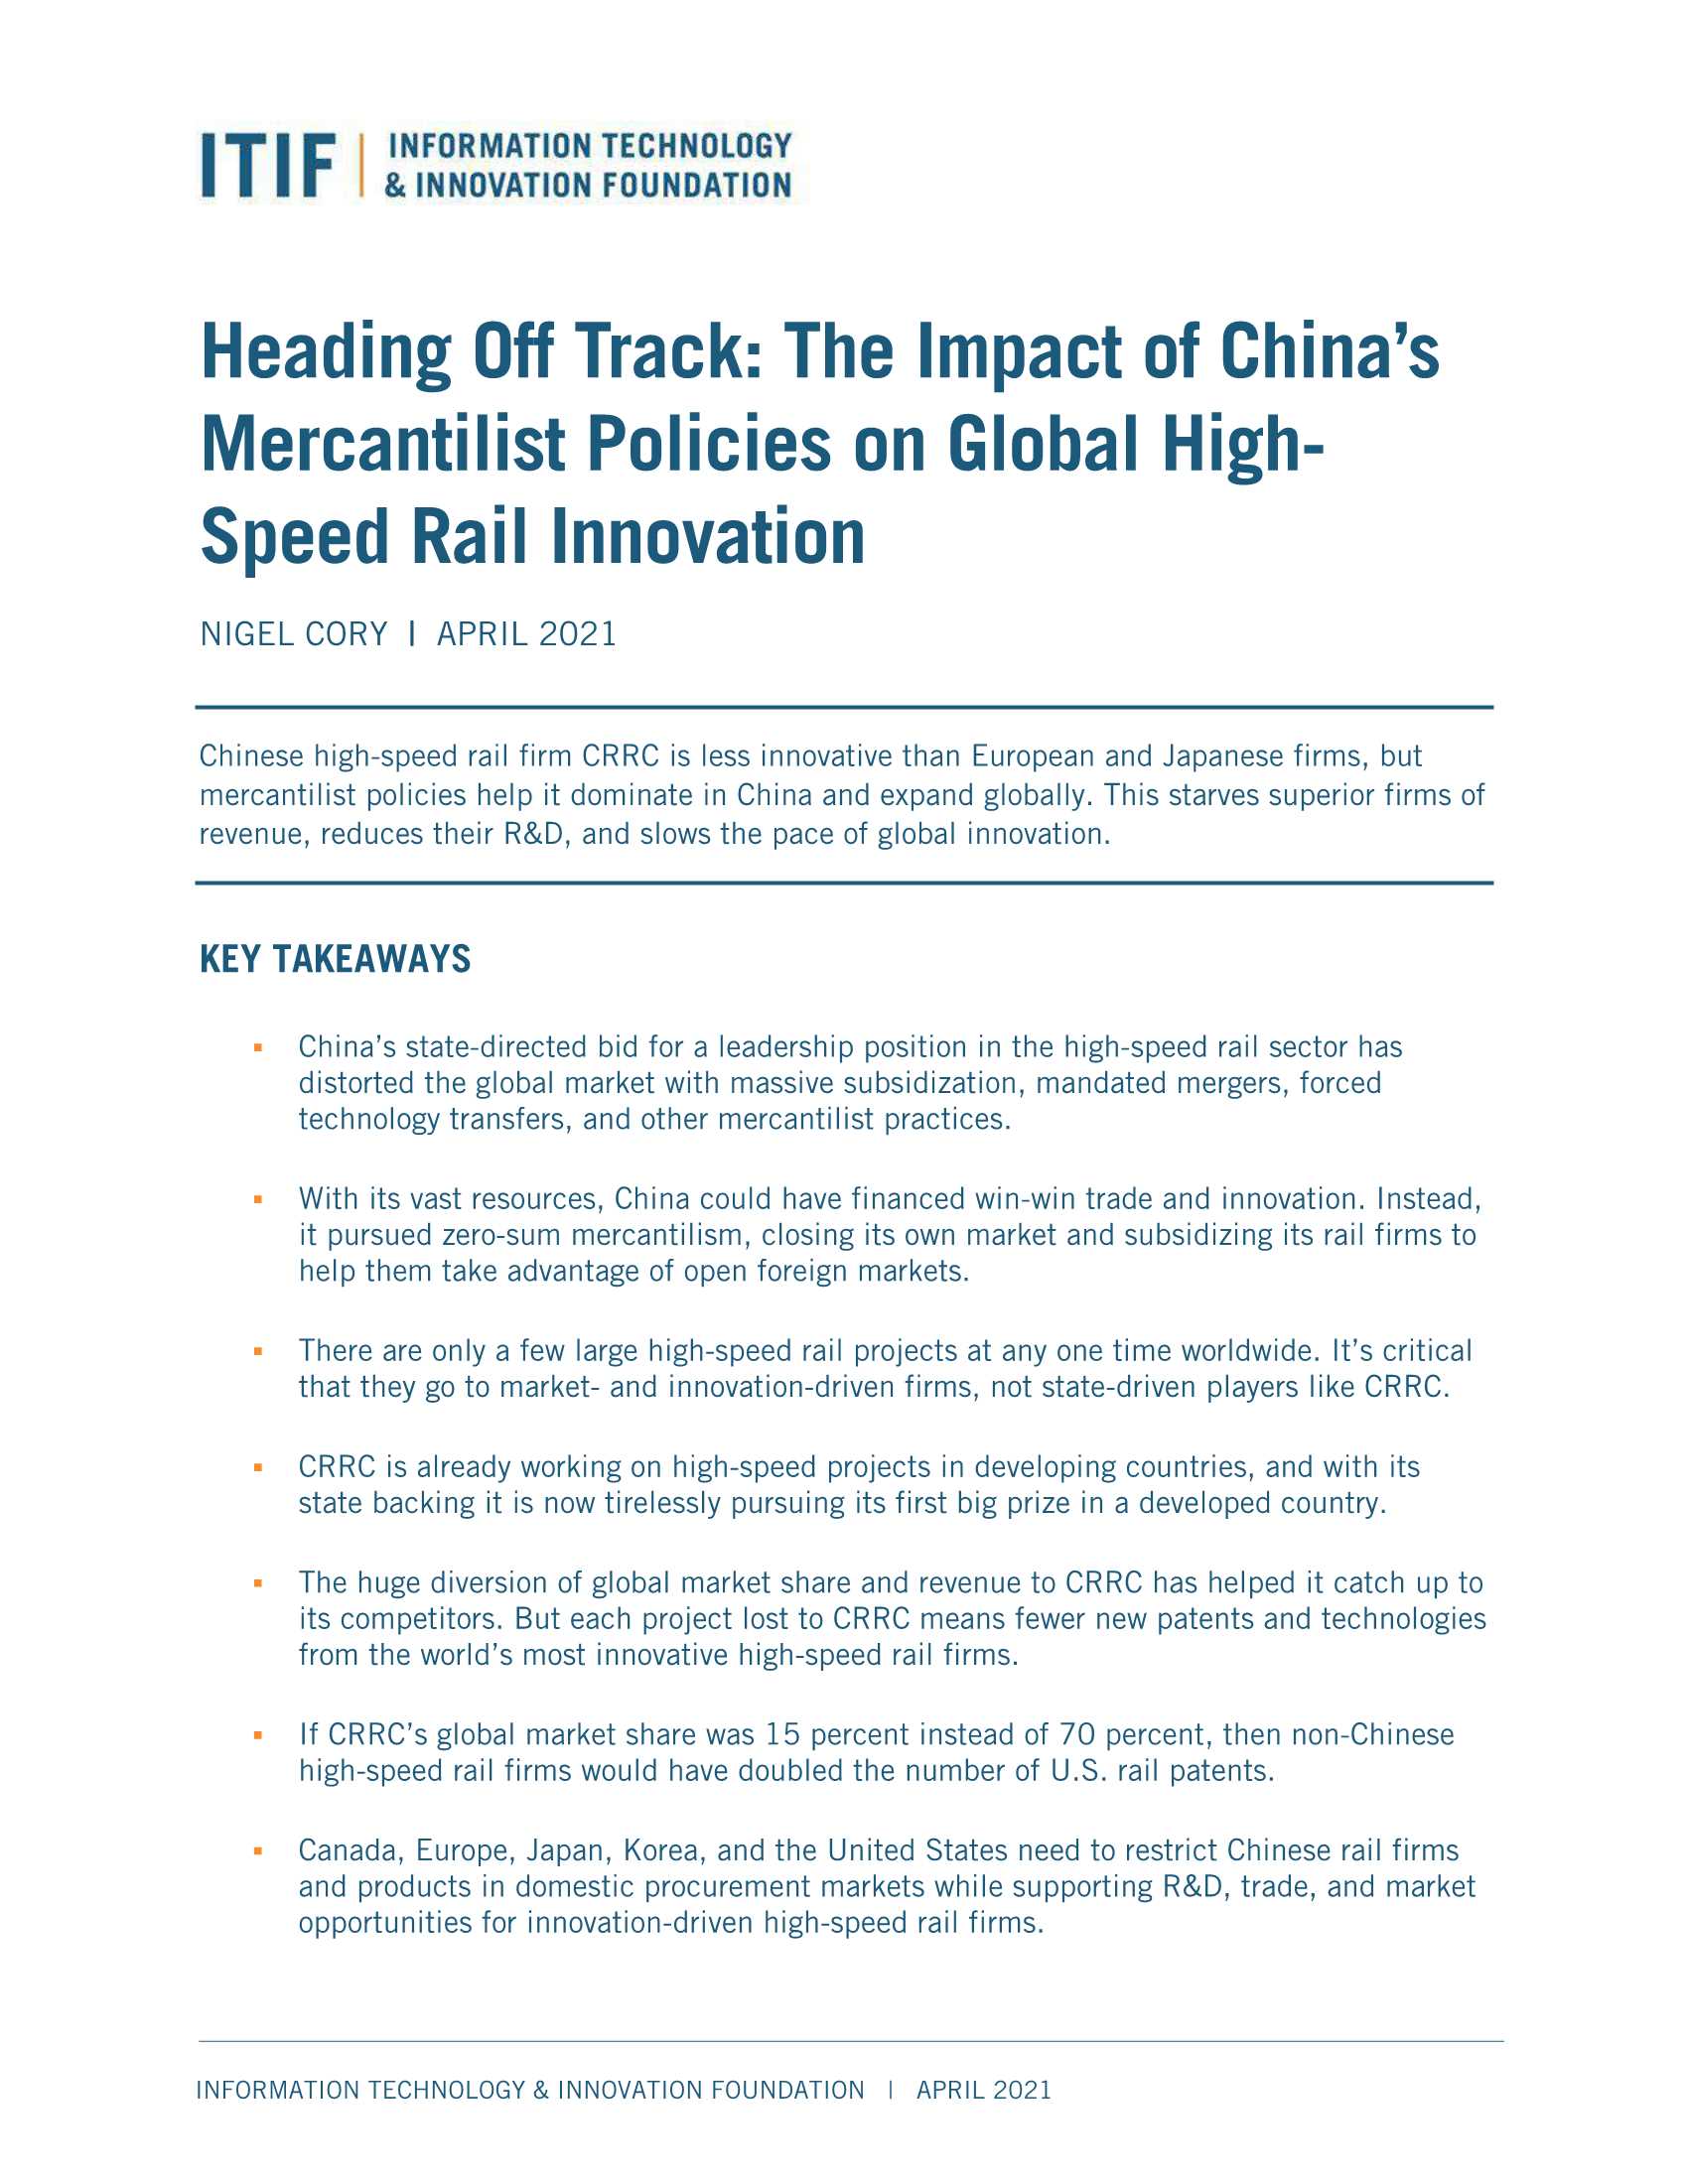 ITIF-中国重商主义政策对全球高铁创新的影响-2021.04-102页